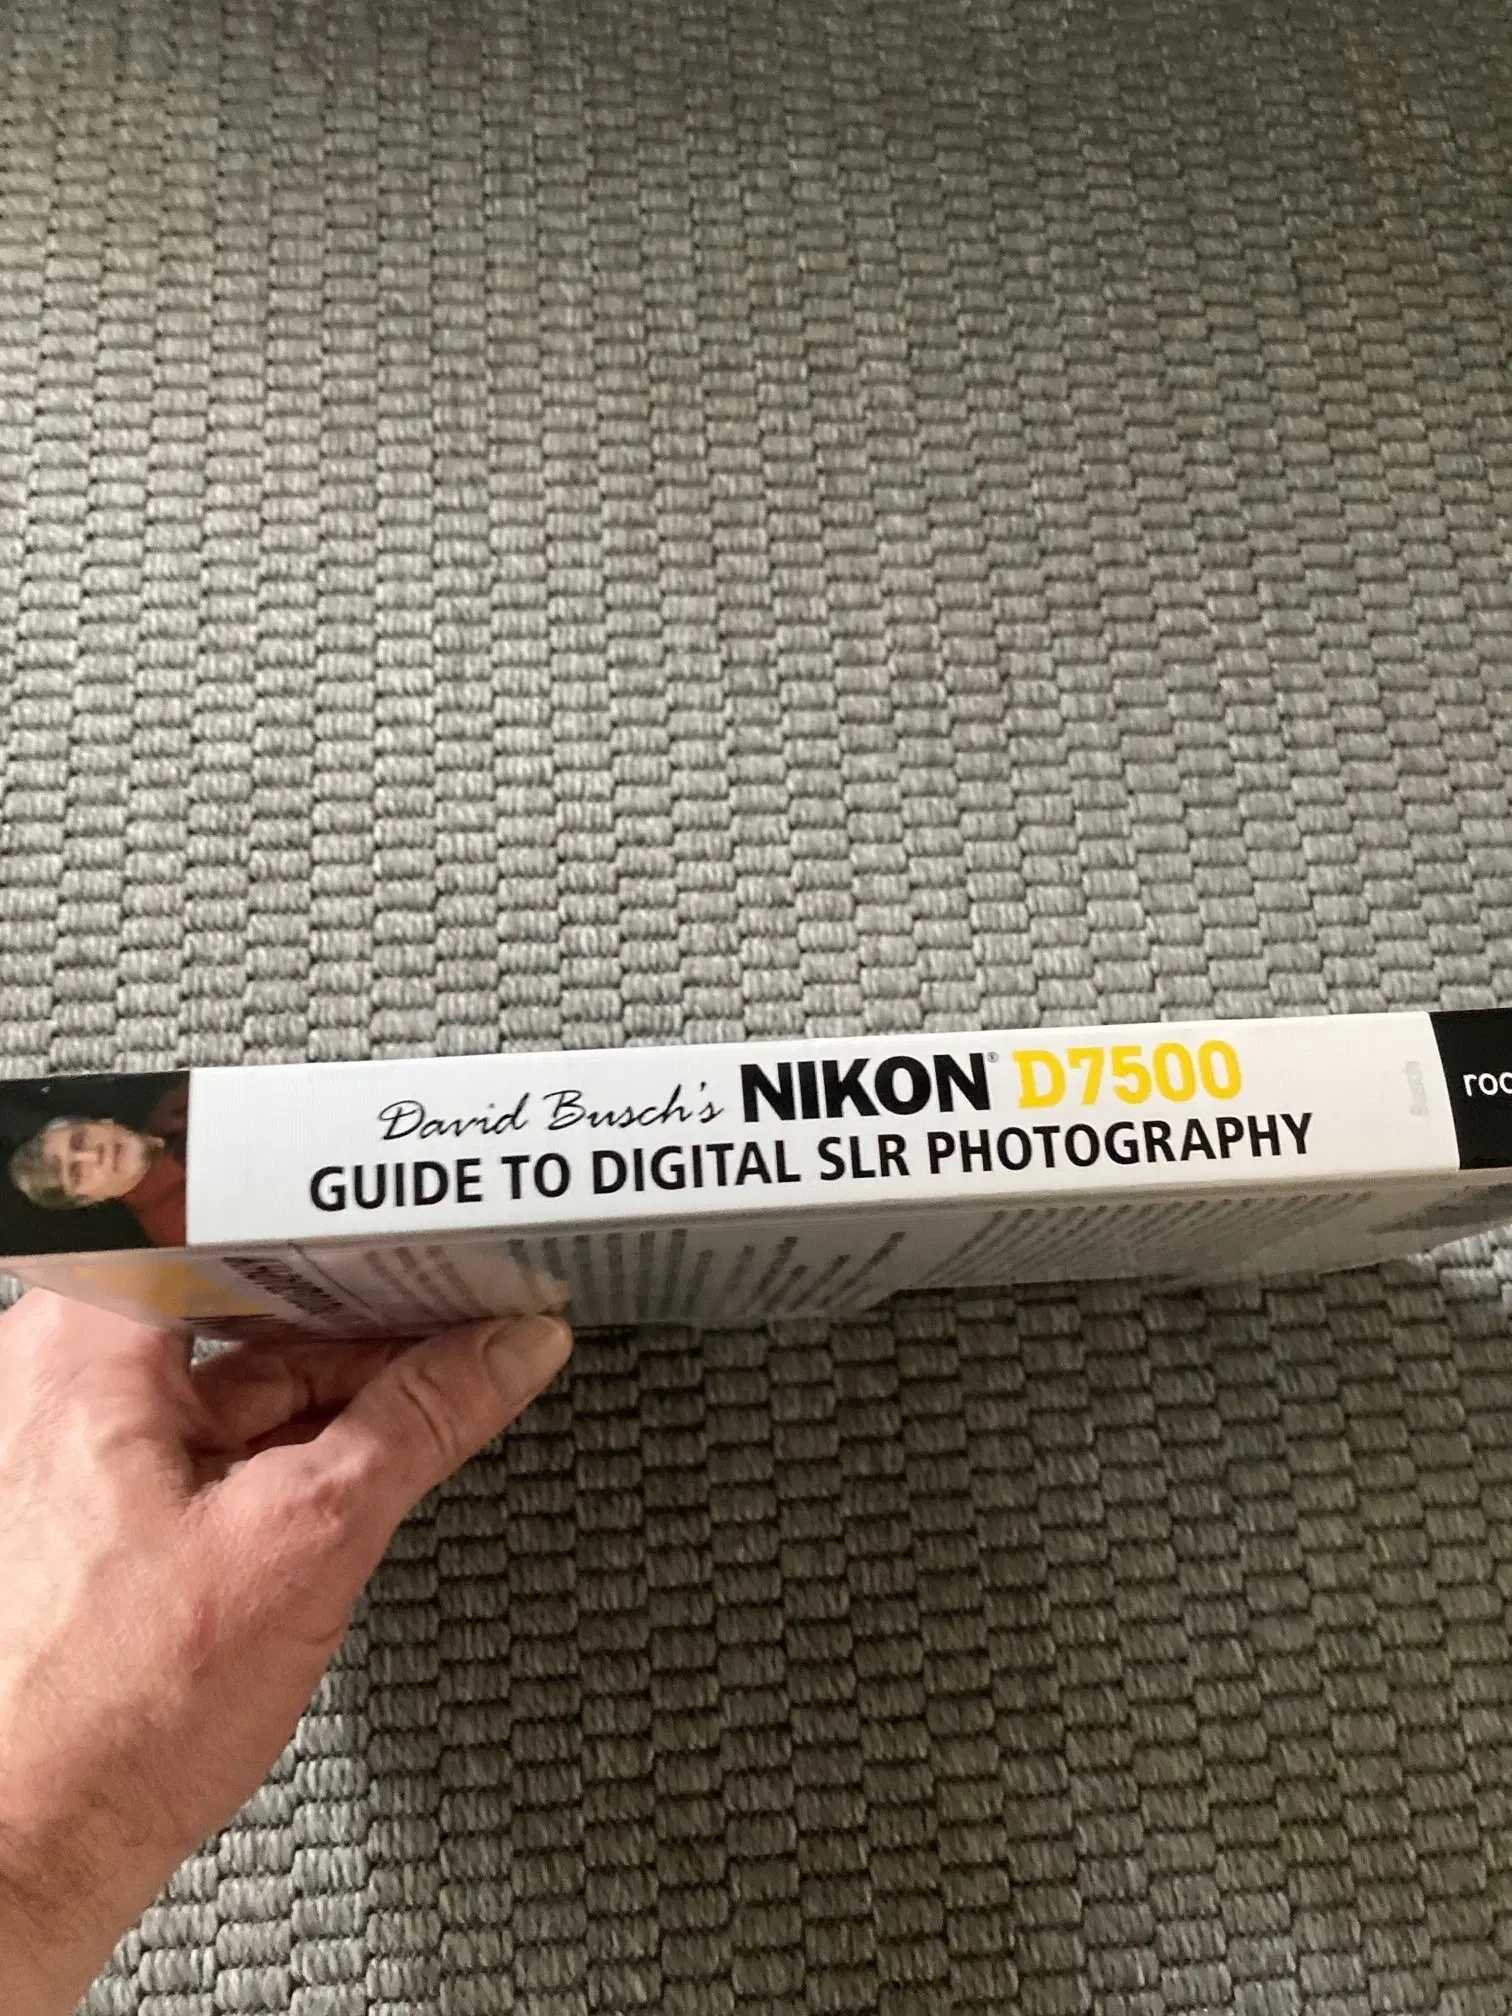 Nikon D7500 Guide